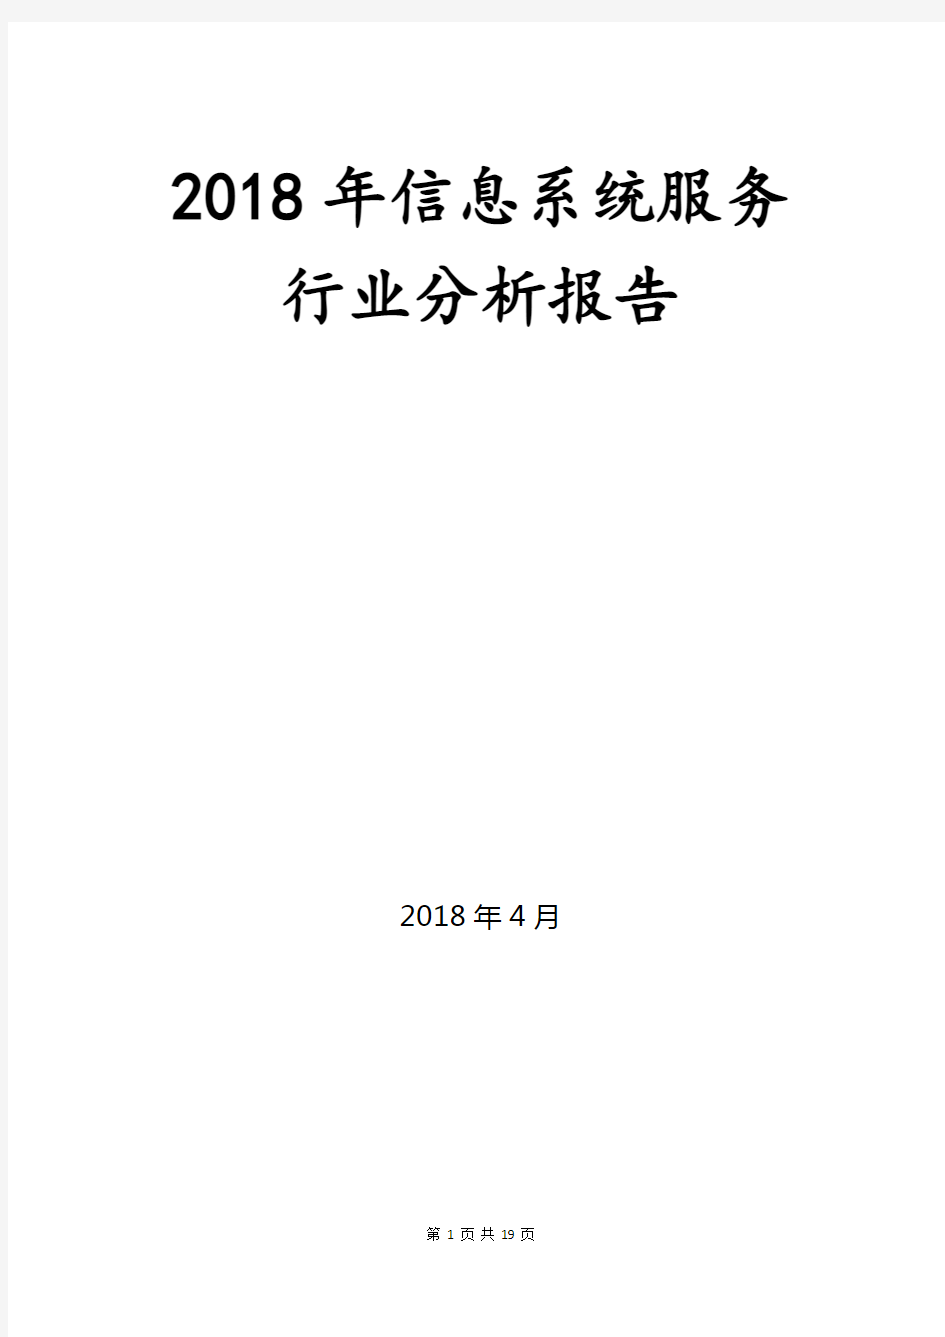 2018年信息系统服务行业分析报告